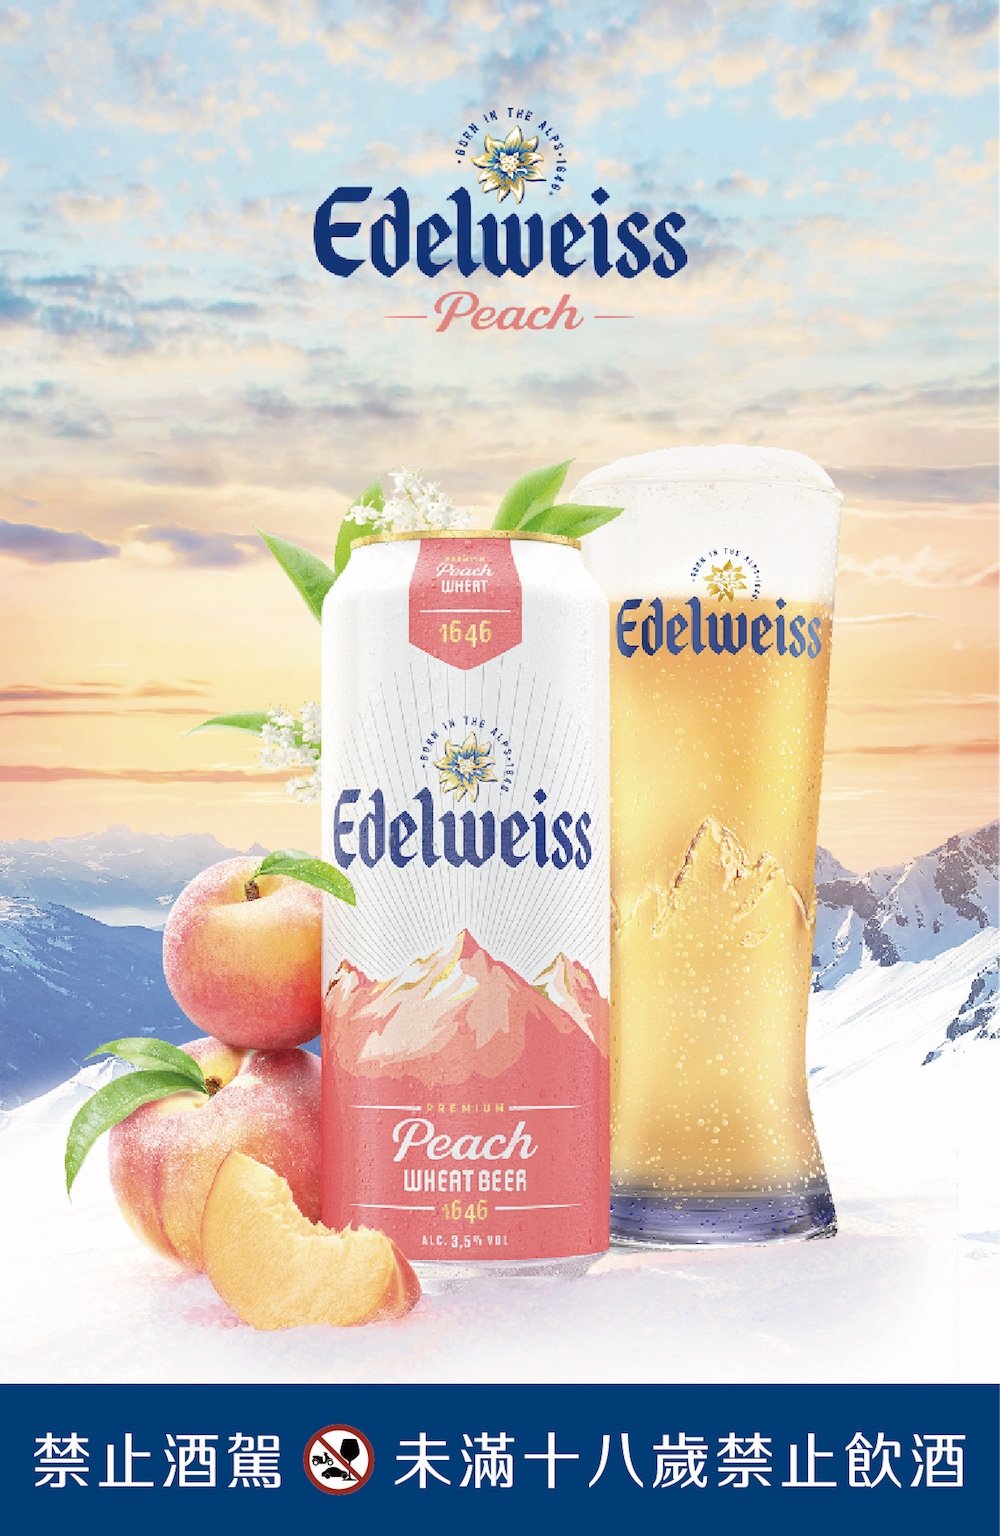 超商啤酒推薦 7. Edelweiss 艾德懷斯 「輕奢蜜桃」